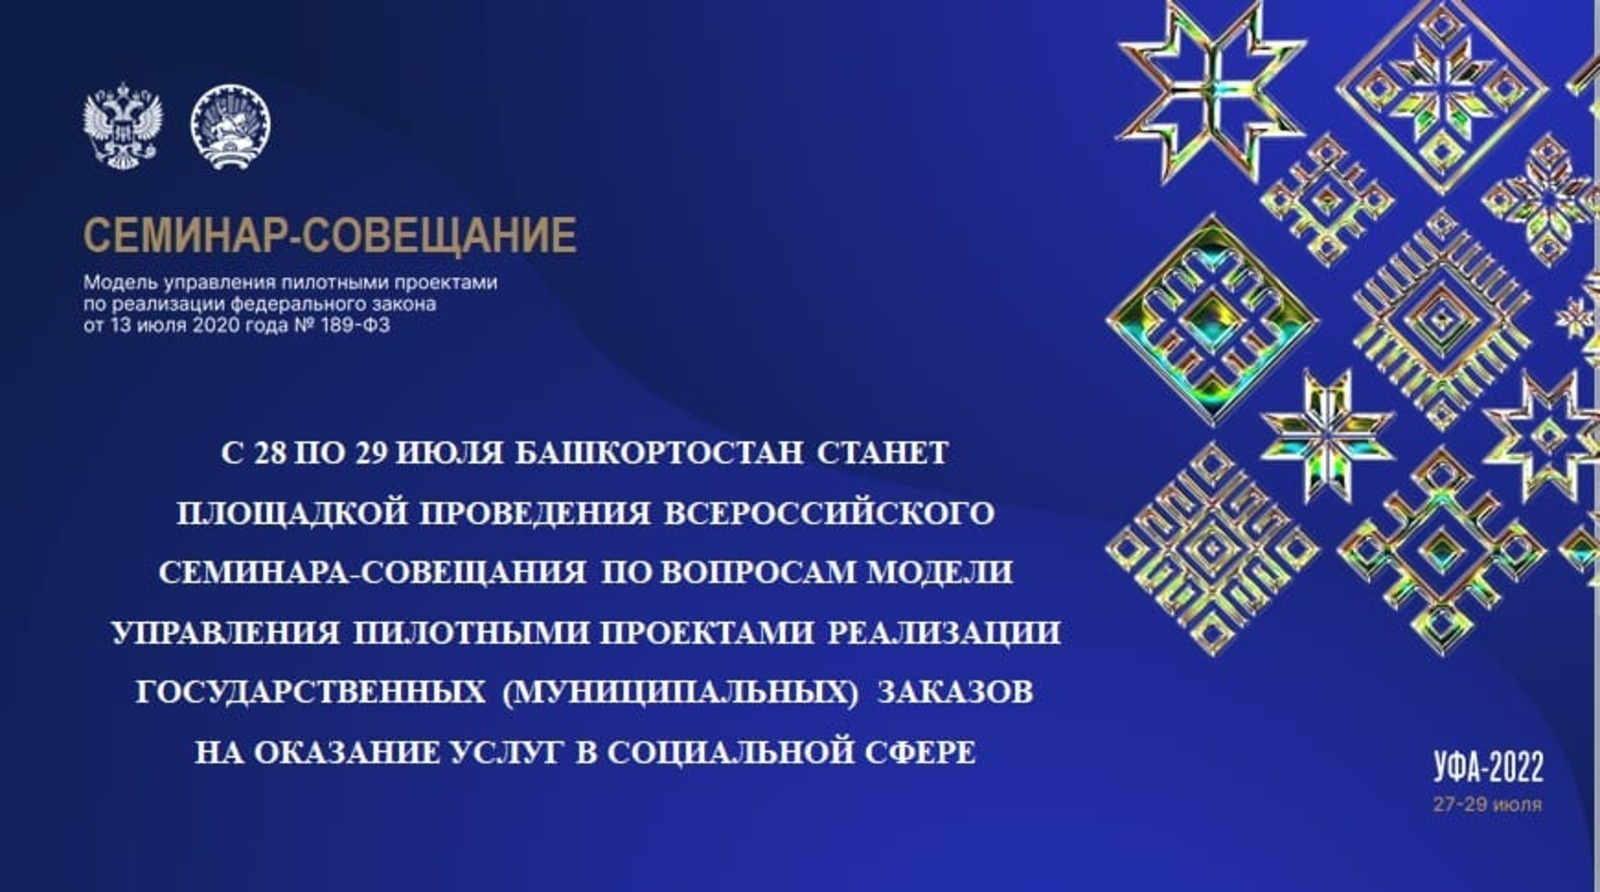 Всероссийский семинар-совещание по вопросам модели управления пилотными проектами реализации госзаказов стартует сегодня в столице Башкирии